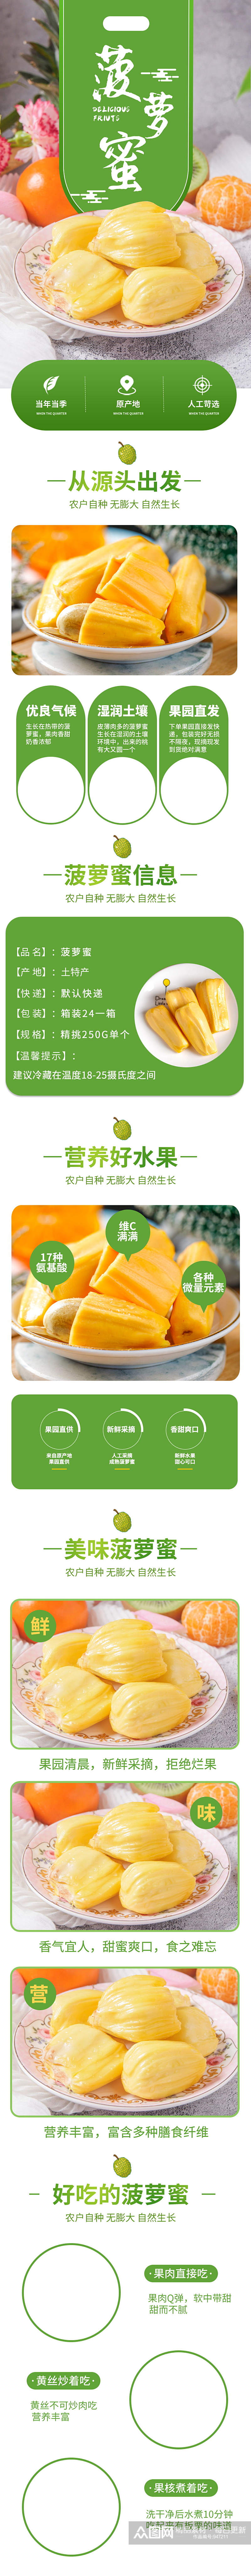 生鲜水果新鲜进口菠萝蜜榴莲热带水果详情页素材